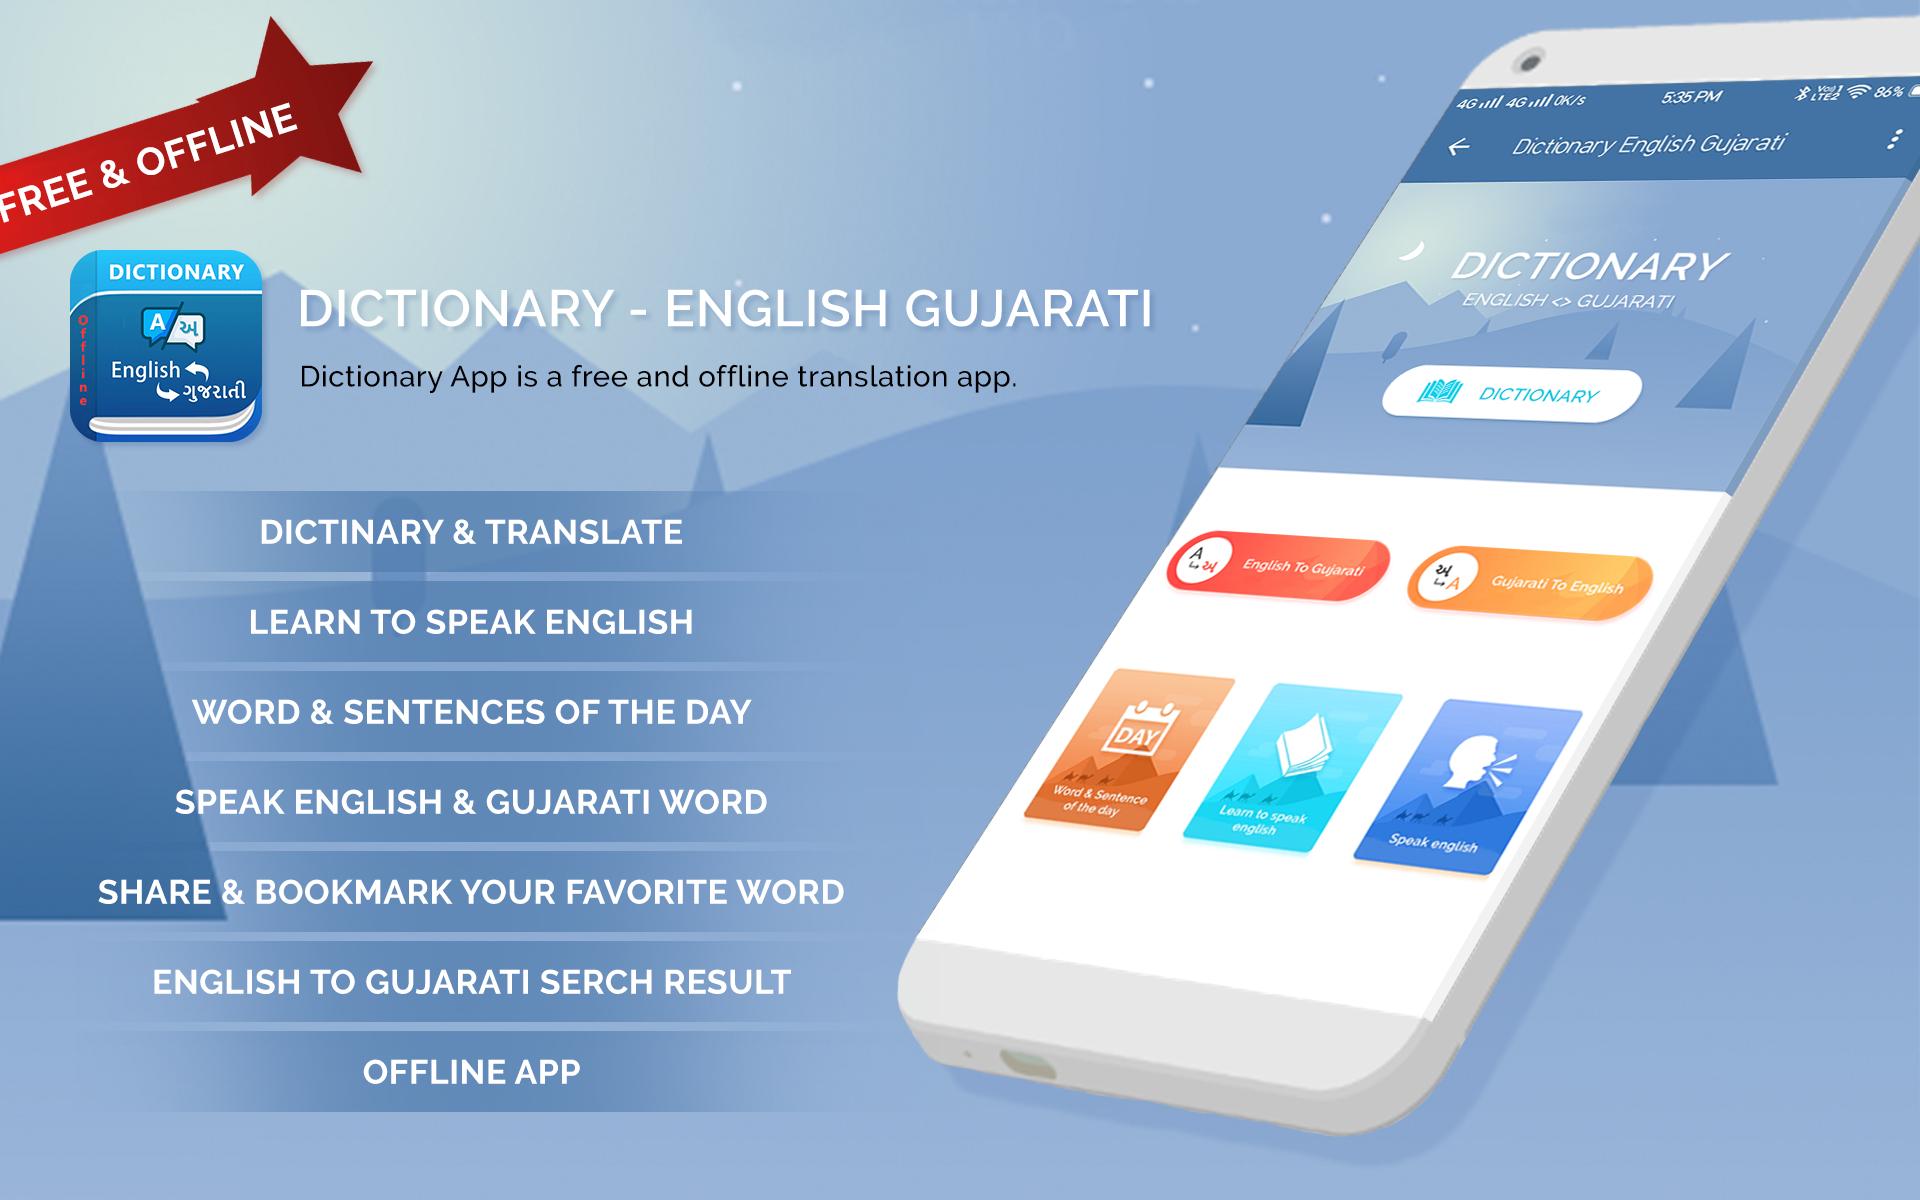 English to gujarati meaning